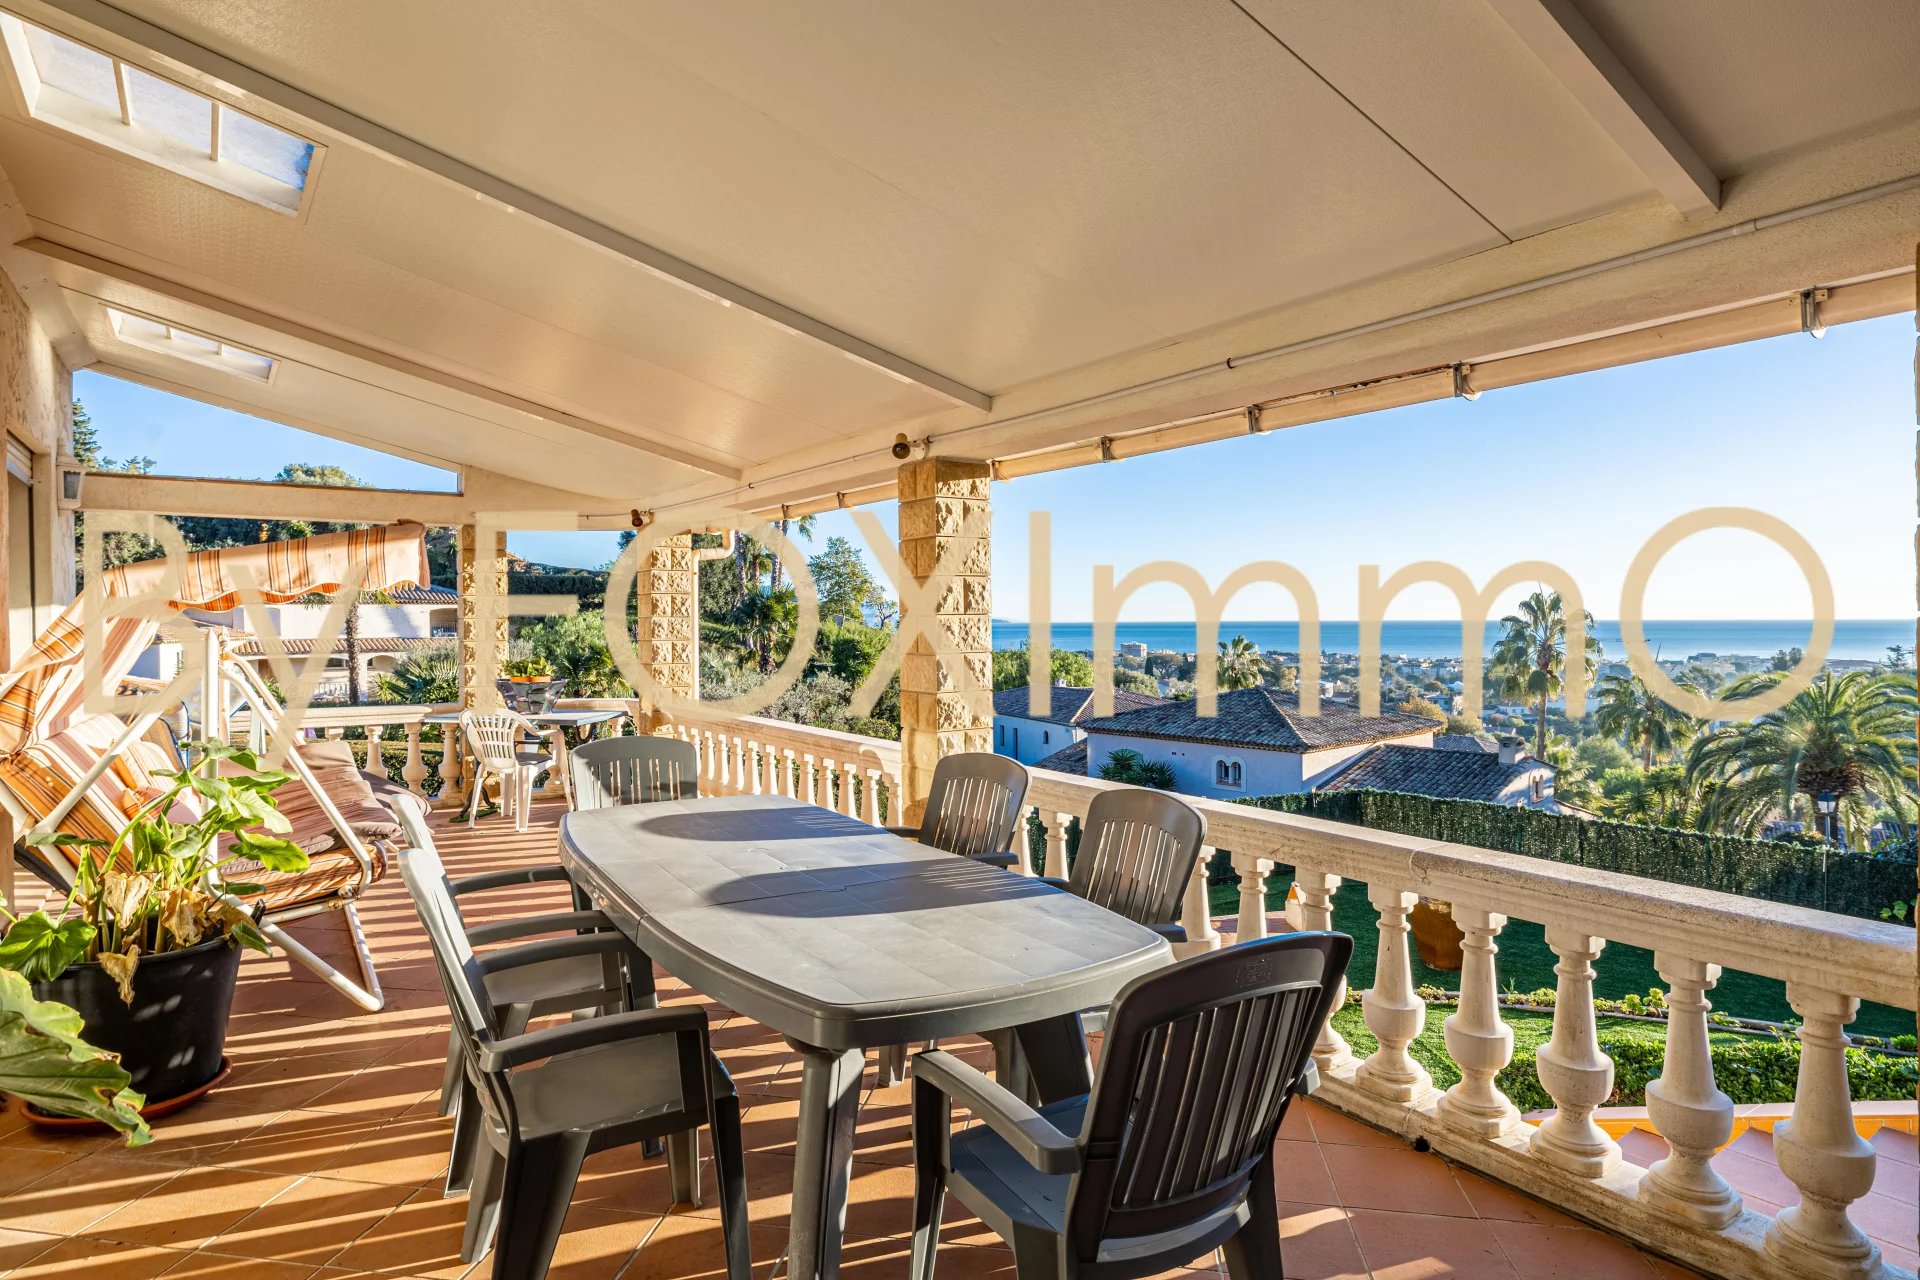 Idealmente situata ad Antibes, questa splendida villa offre una vista panoramica sul mare